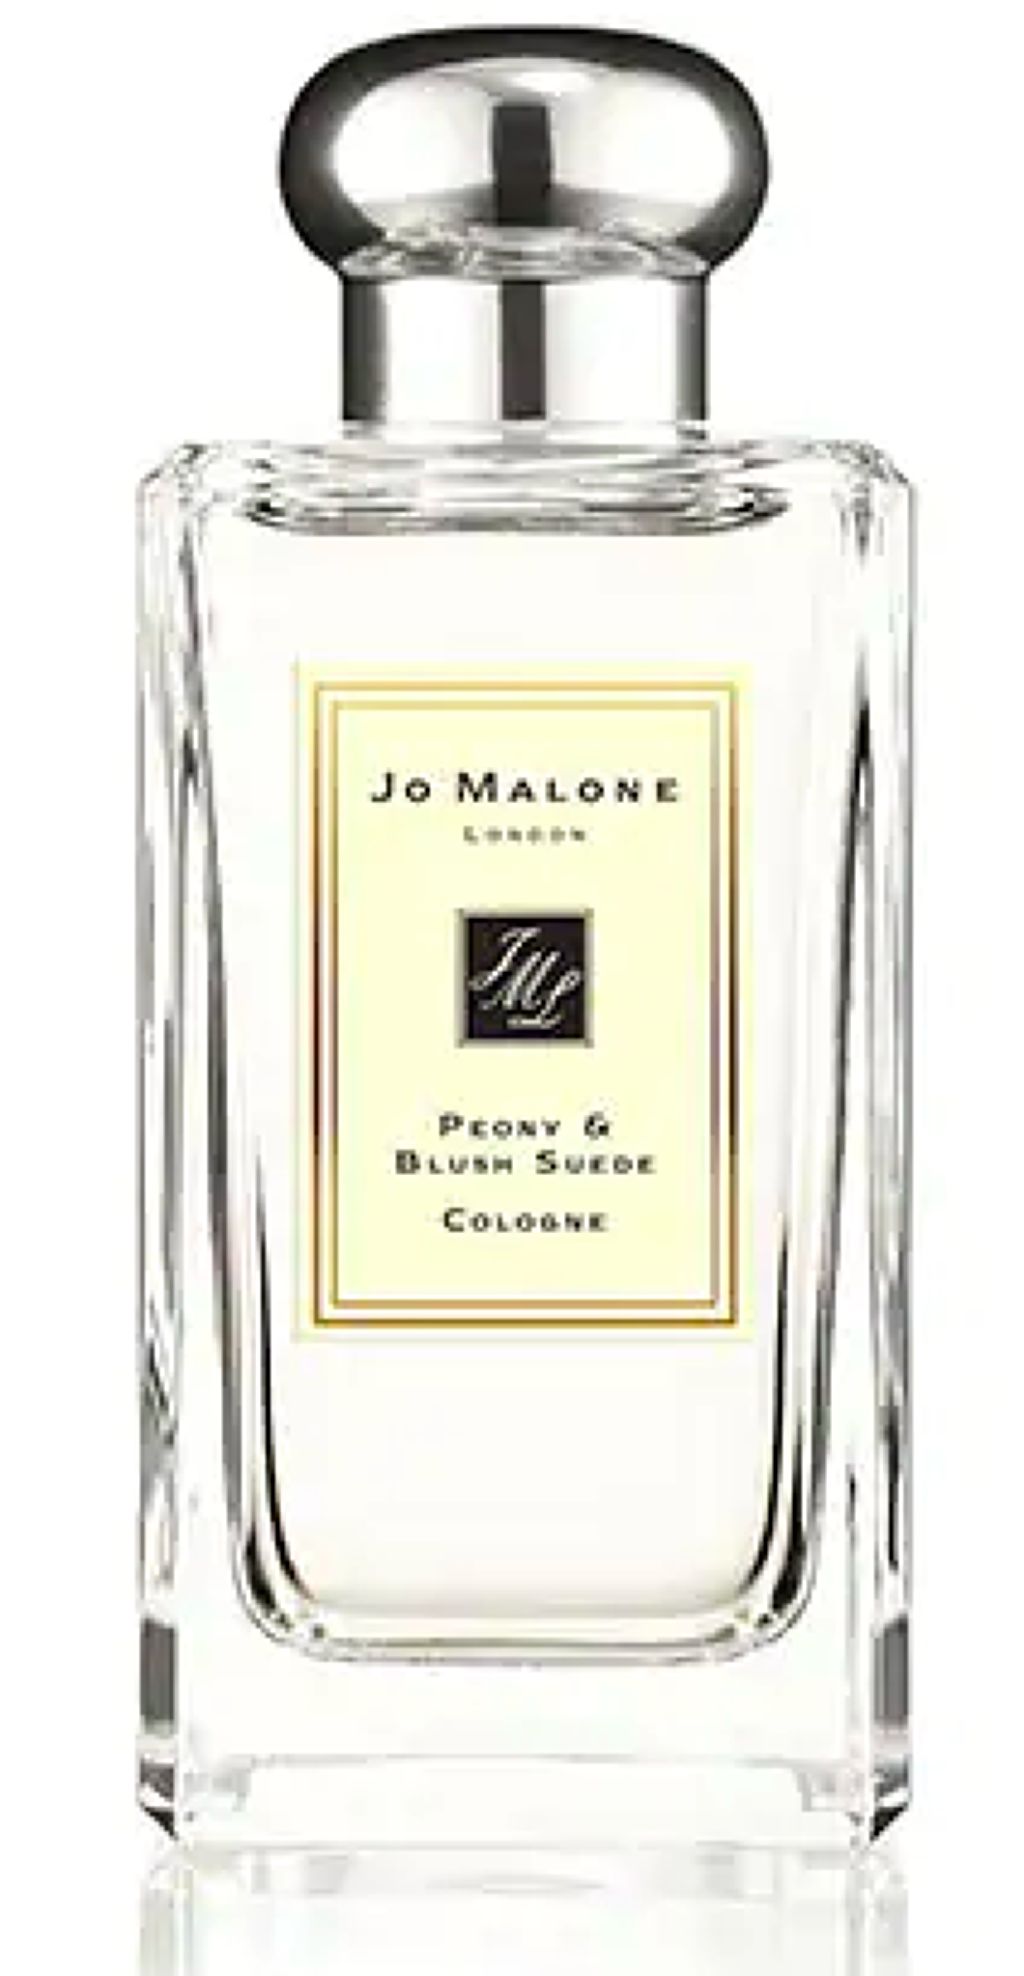 ジョーマローン 香水 ピオニー&ブラッシュスエードコロン 9mL - 香水